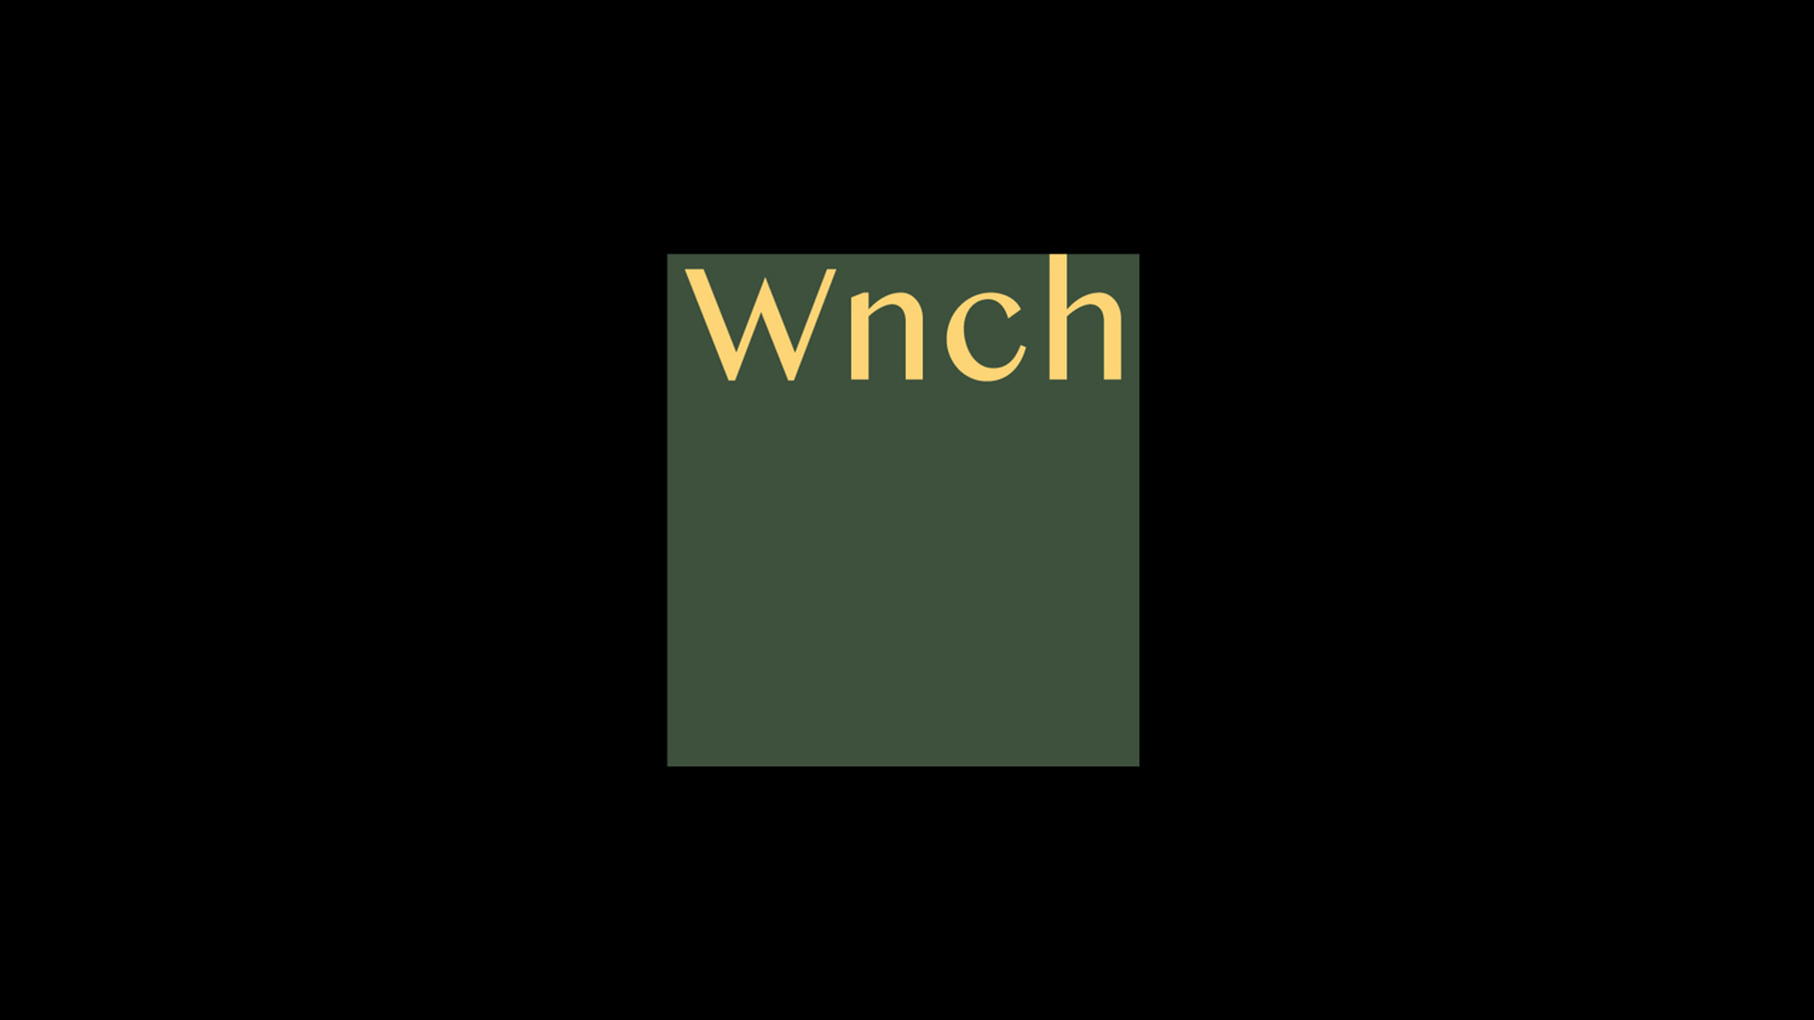 WNCH